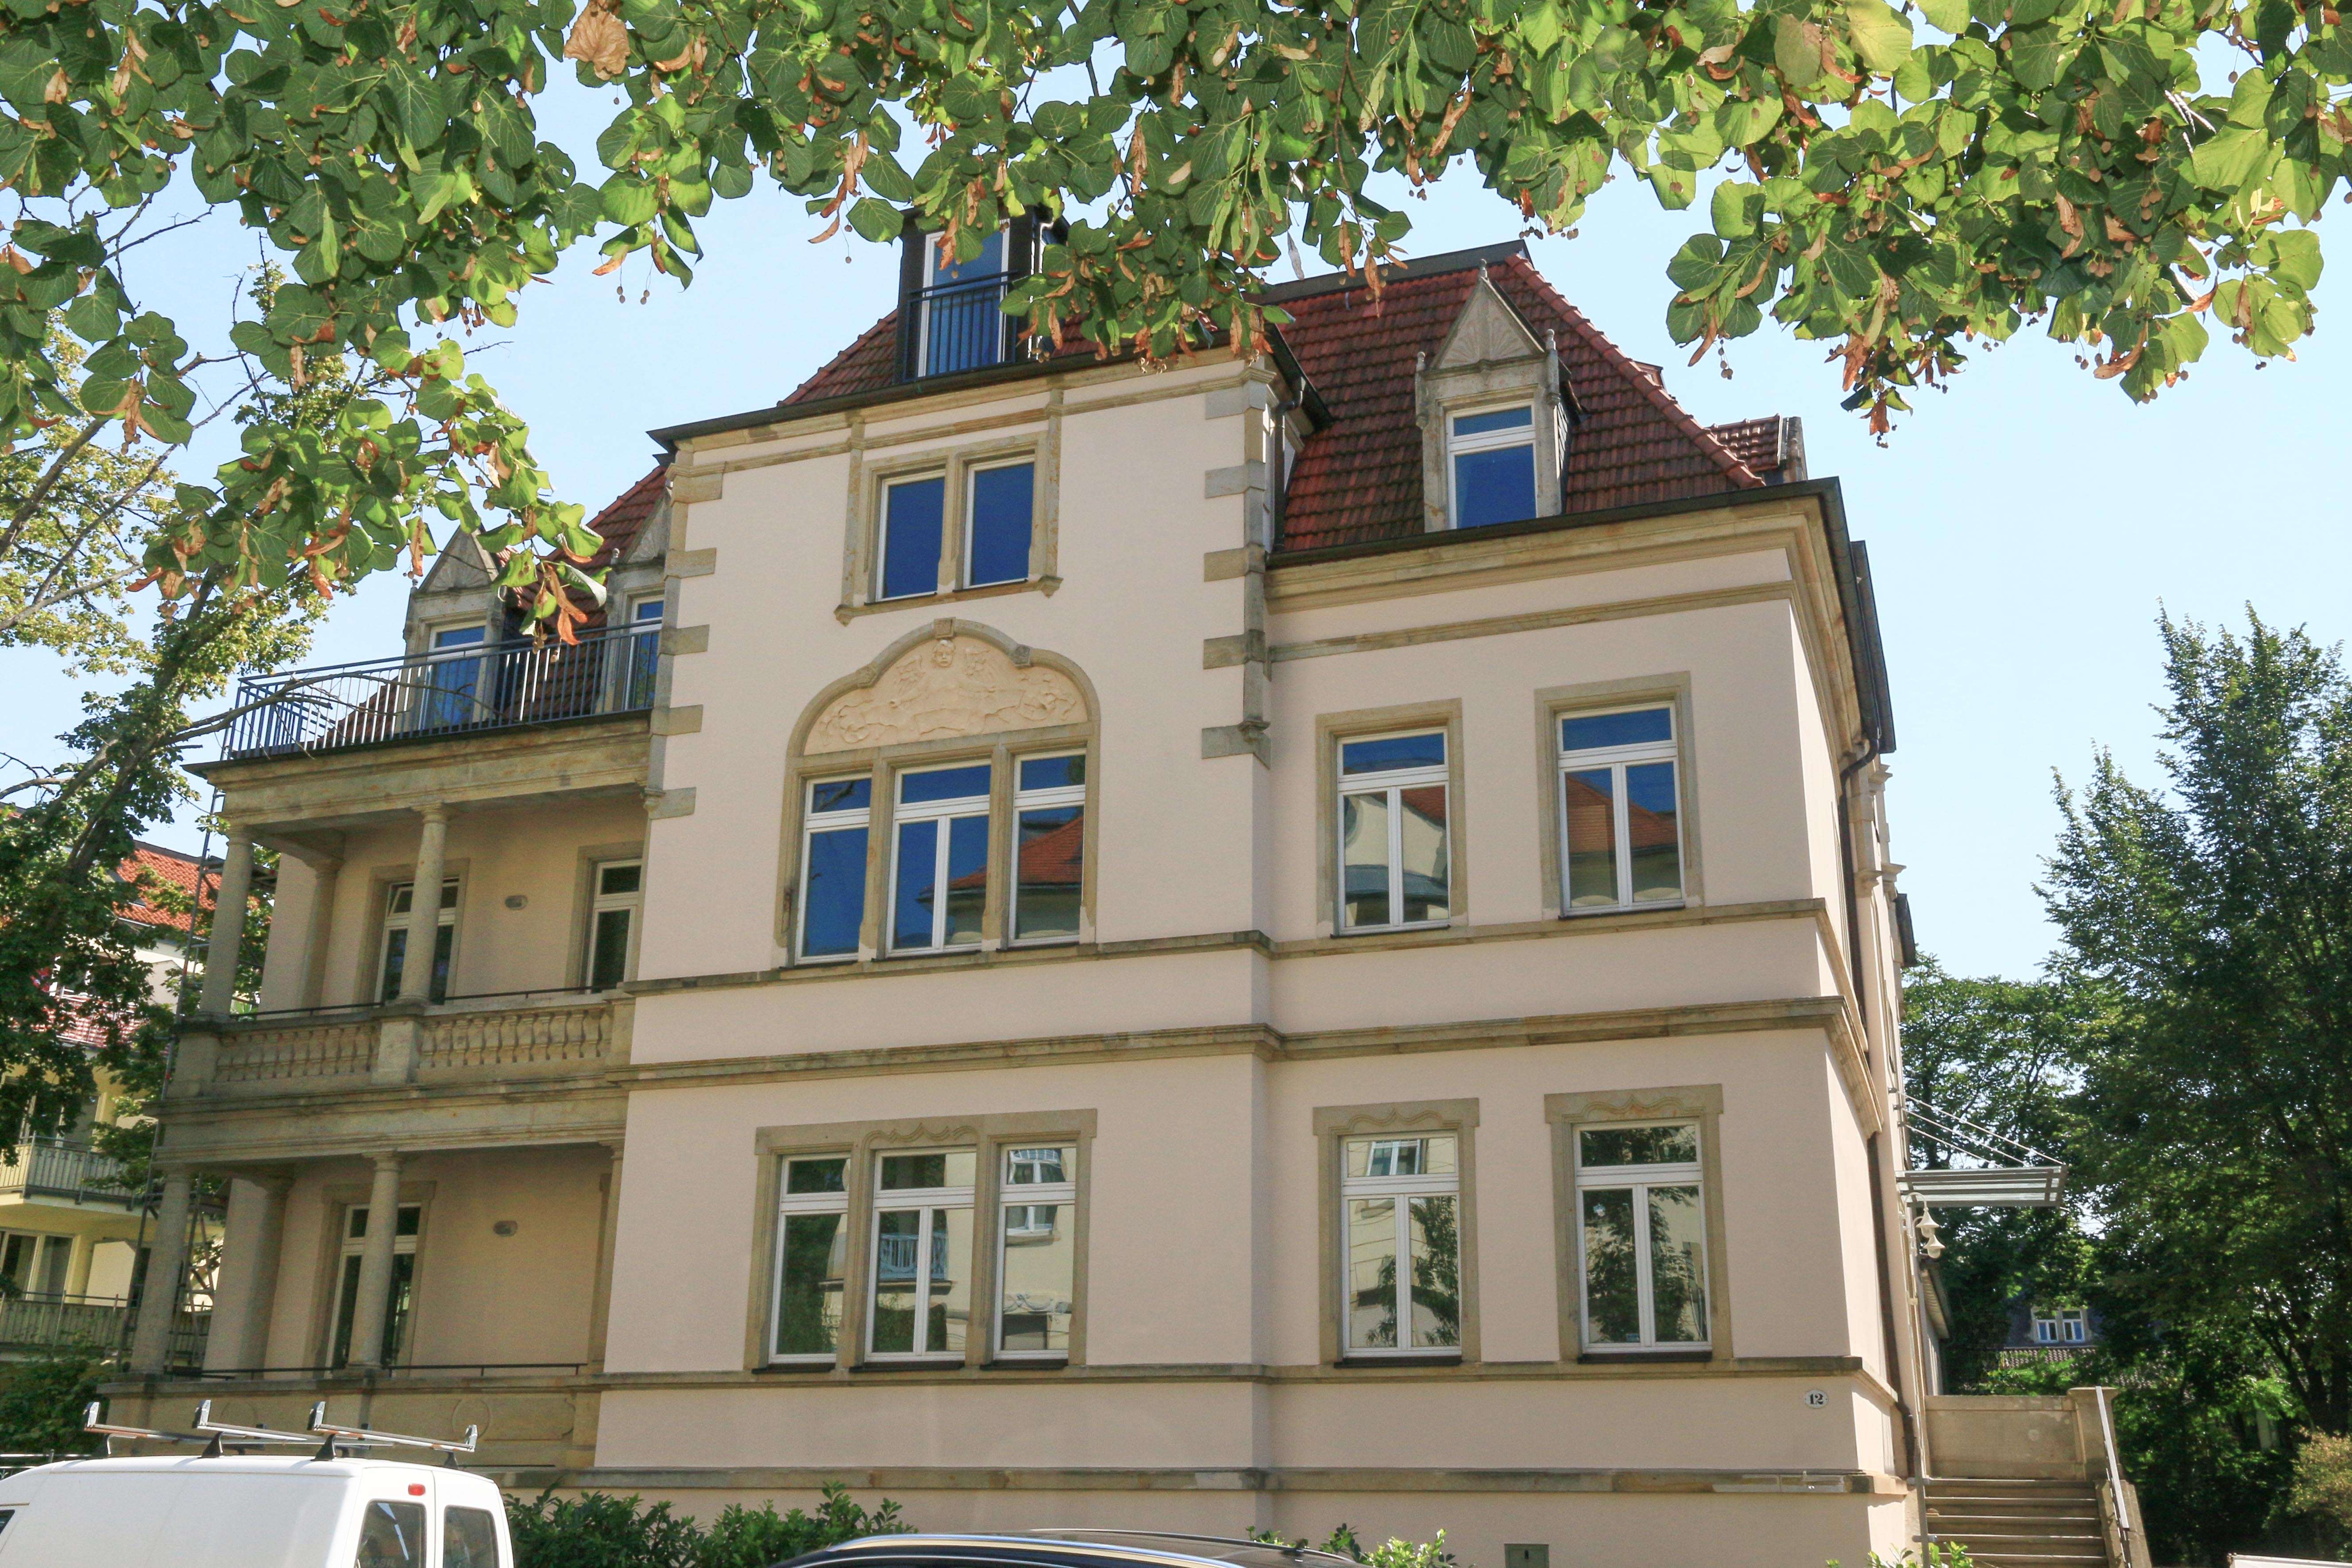 Herrliche 3-Zimmer-Wohnung mit großem Balkon, inkl. Stellplatz - nahe Universitätsklinikum